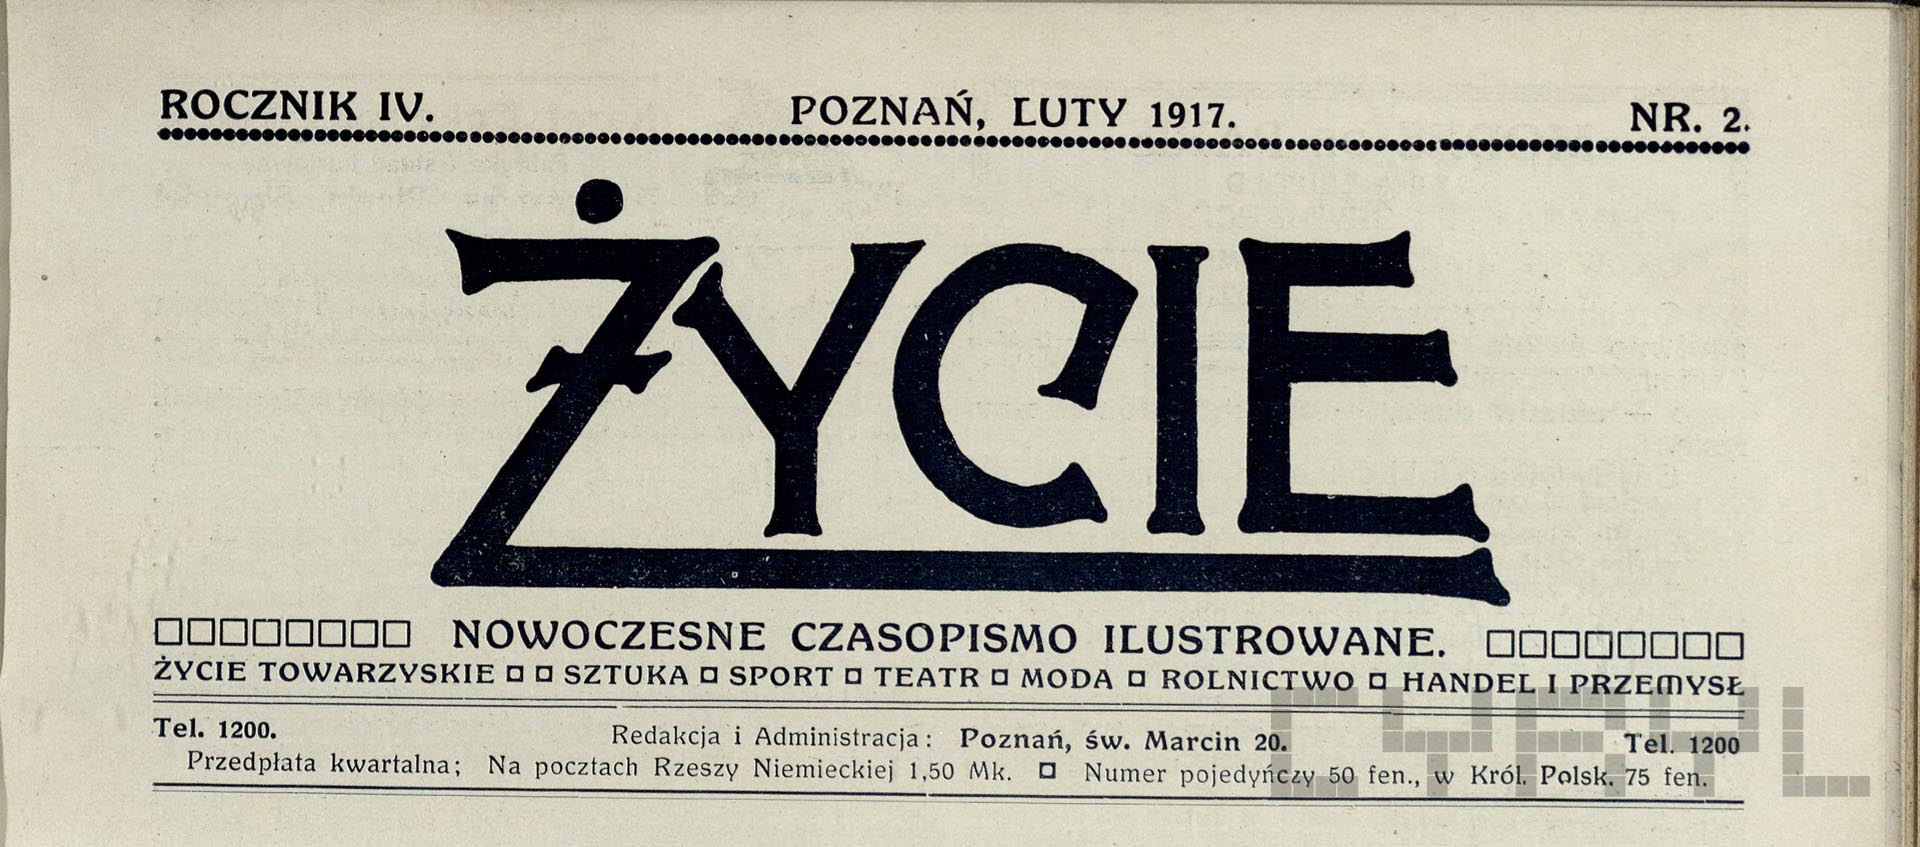 Życie. Nowoczesne czasopismo ilustrowane |1916–1918 | Ze zb. Krzysztofa Dzierzkowskiego